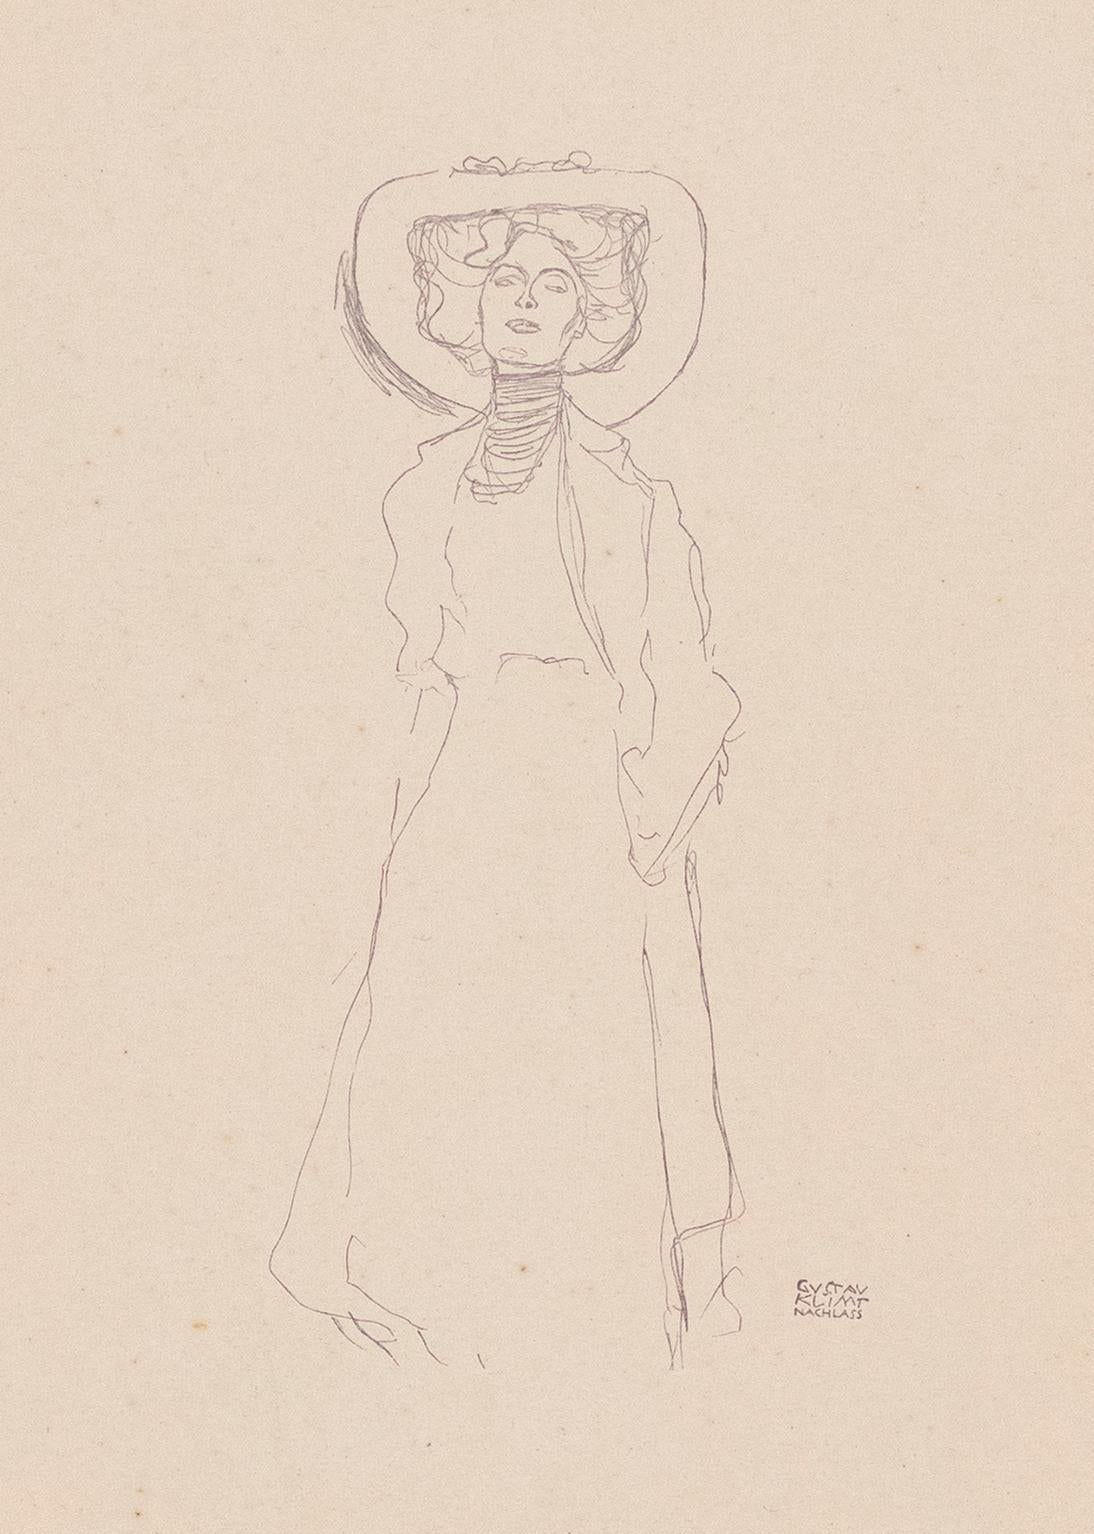 Gustav Klimt Handzeichnungen (Sketch) collotype lithograph, 1922 - Print by (after) Gustav Klimt